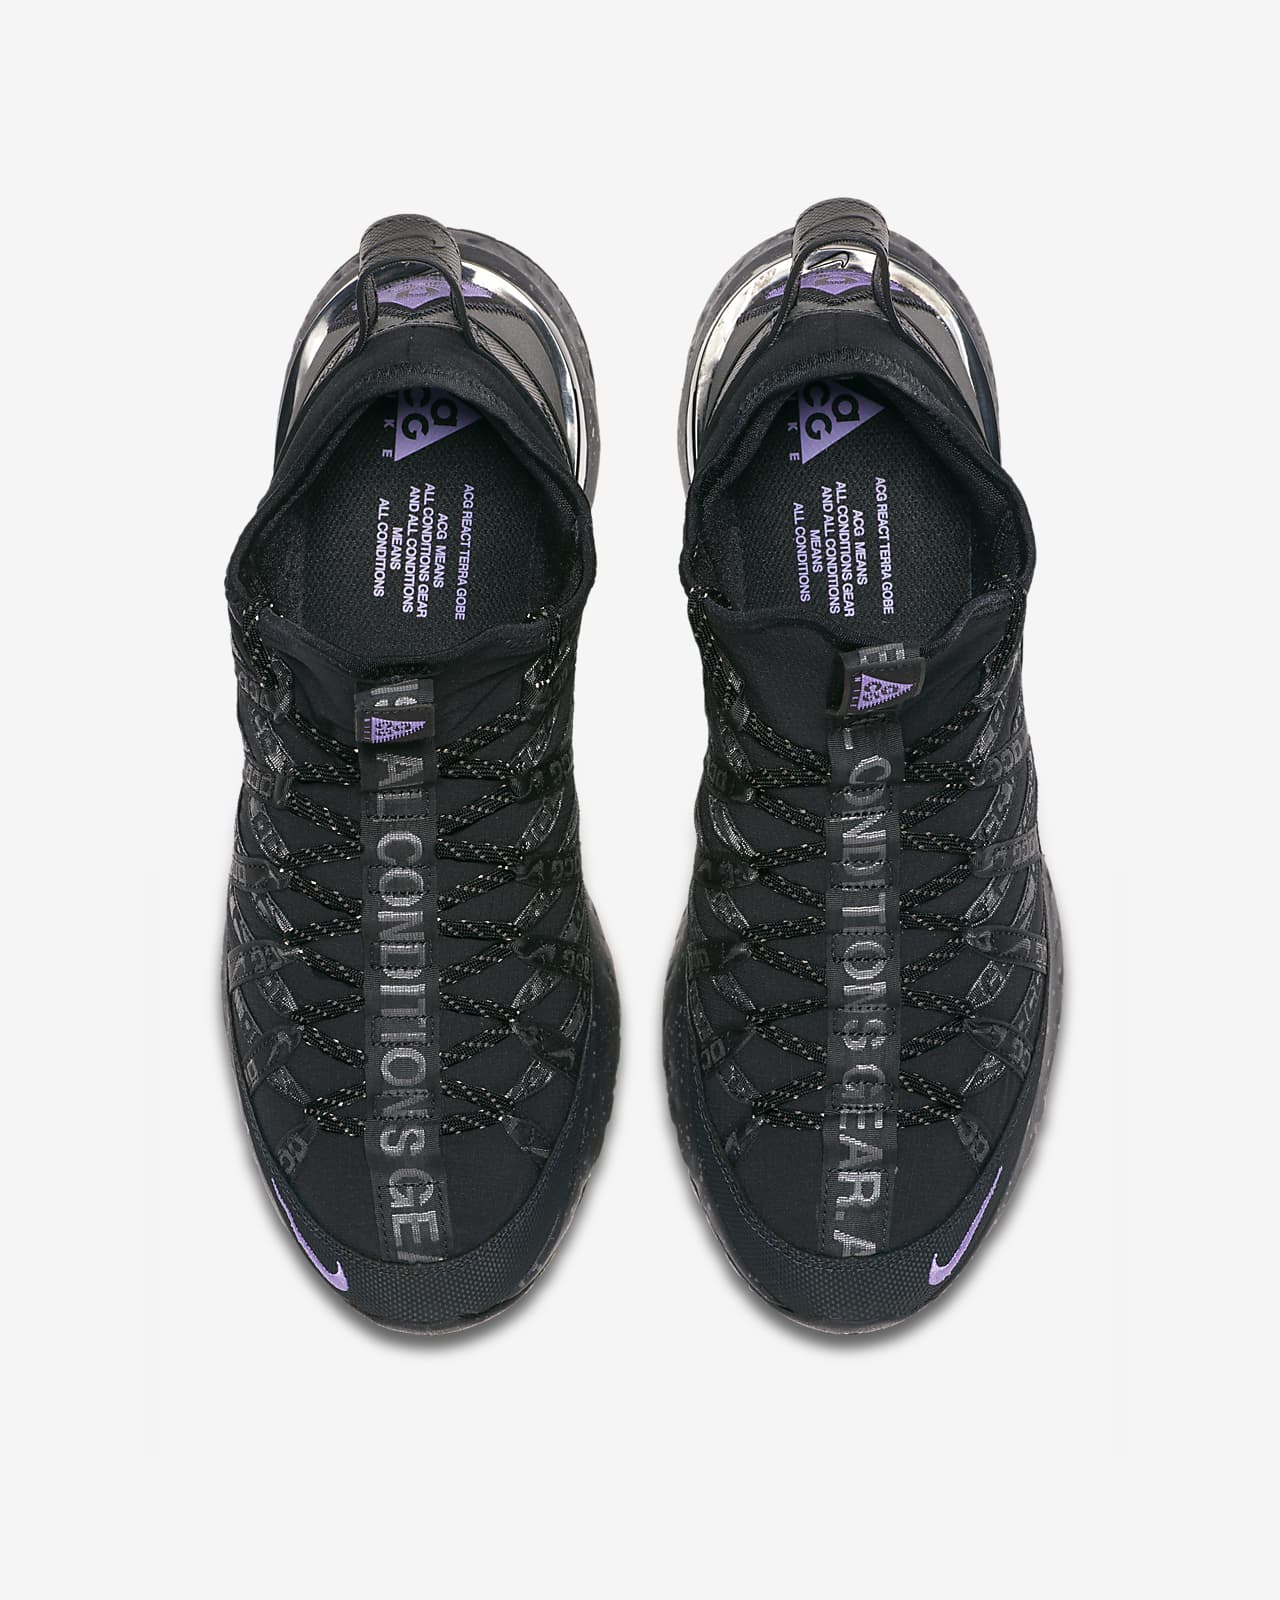 Nike ACG React Terra Gobe Men's Shoe 